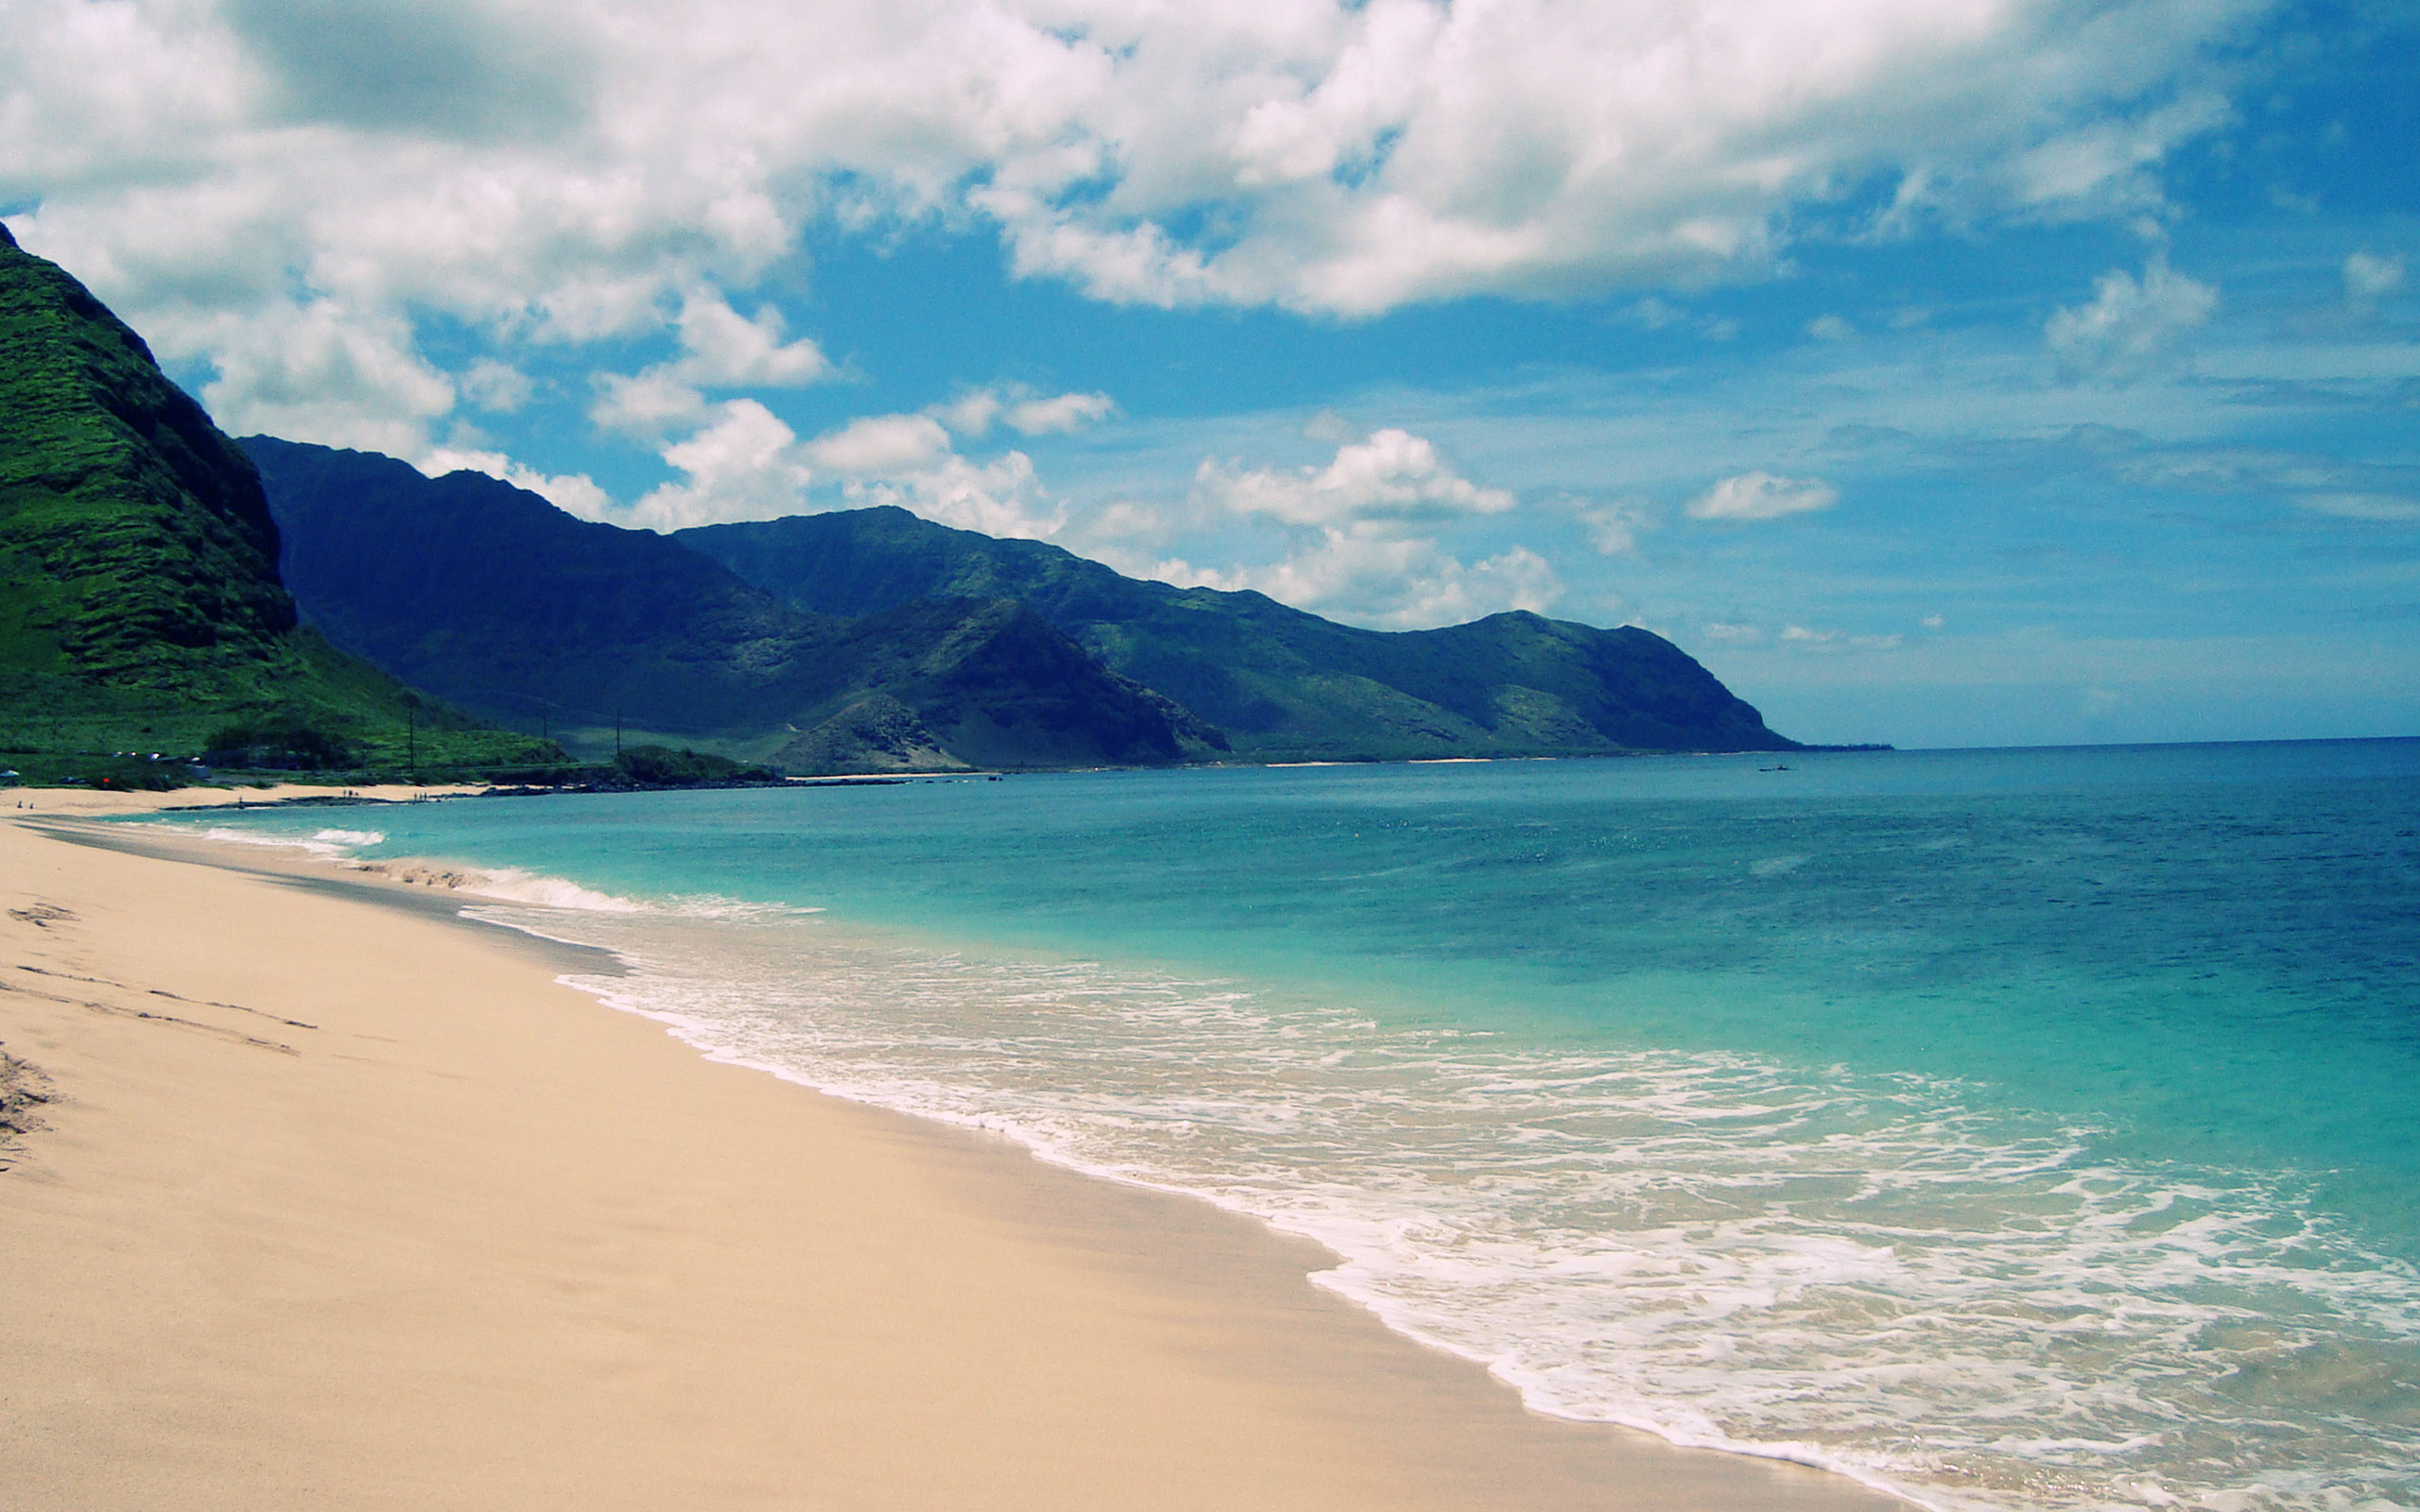 papel pintado de la playa de hawaii,cuerpo de agua,playa,costa,mar,cielo